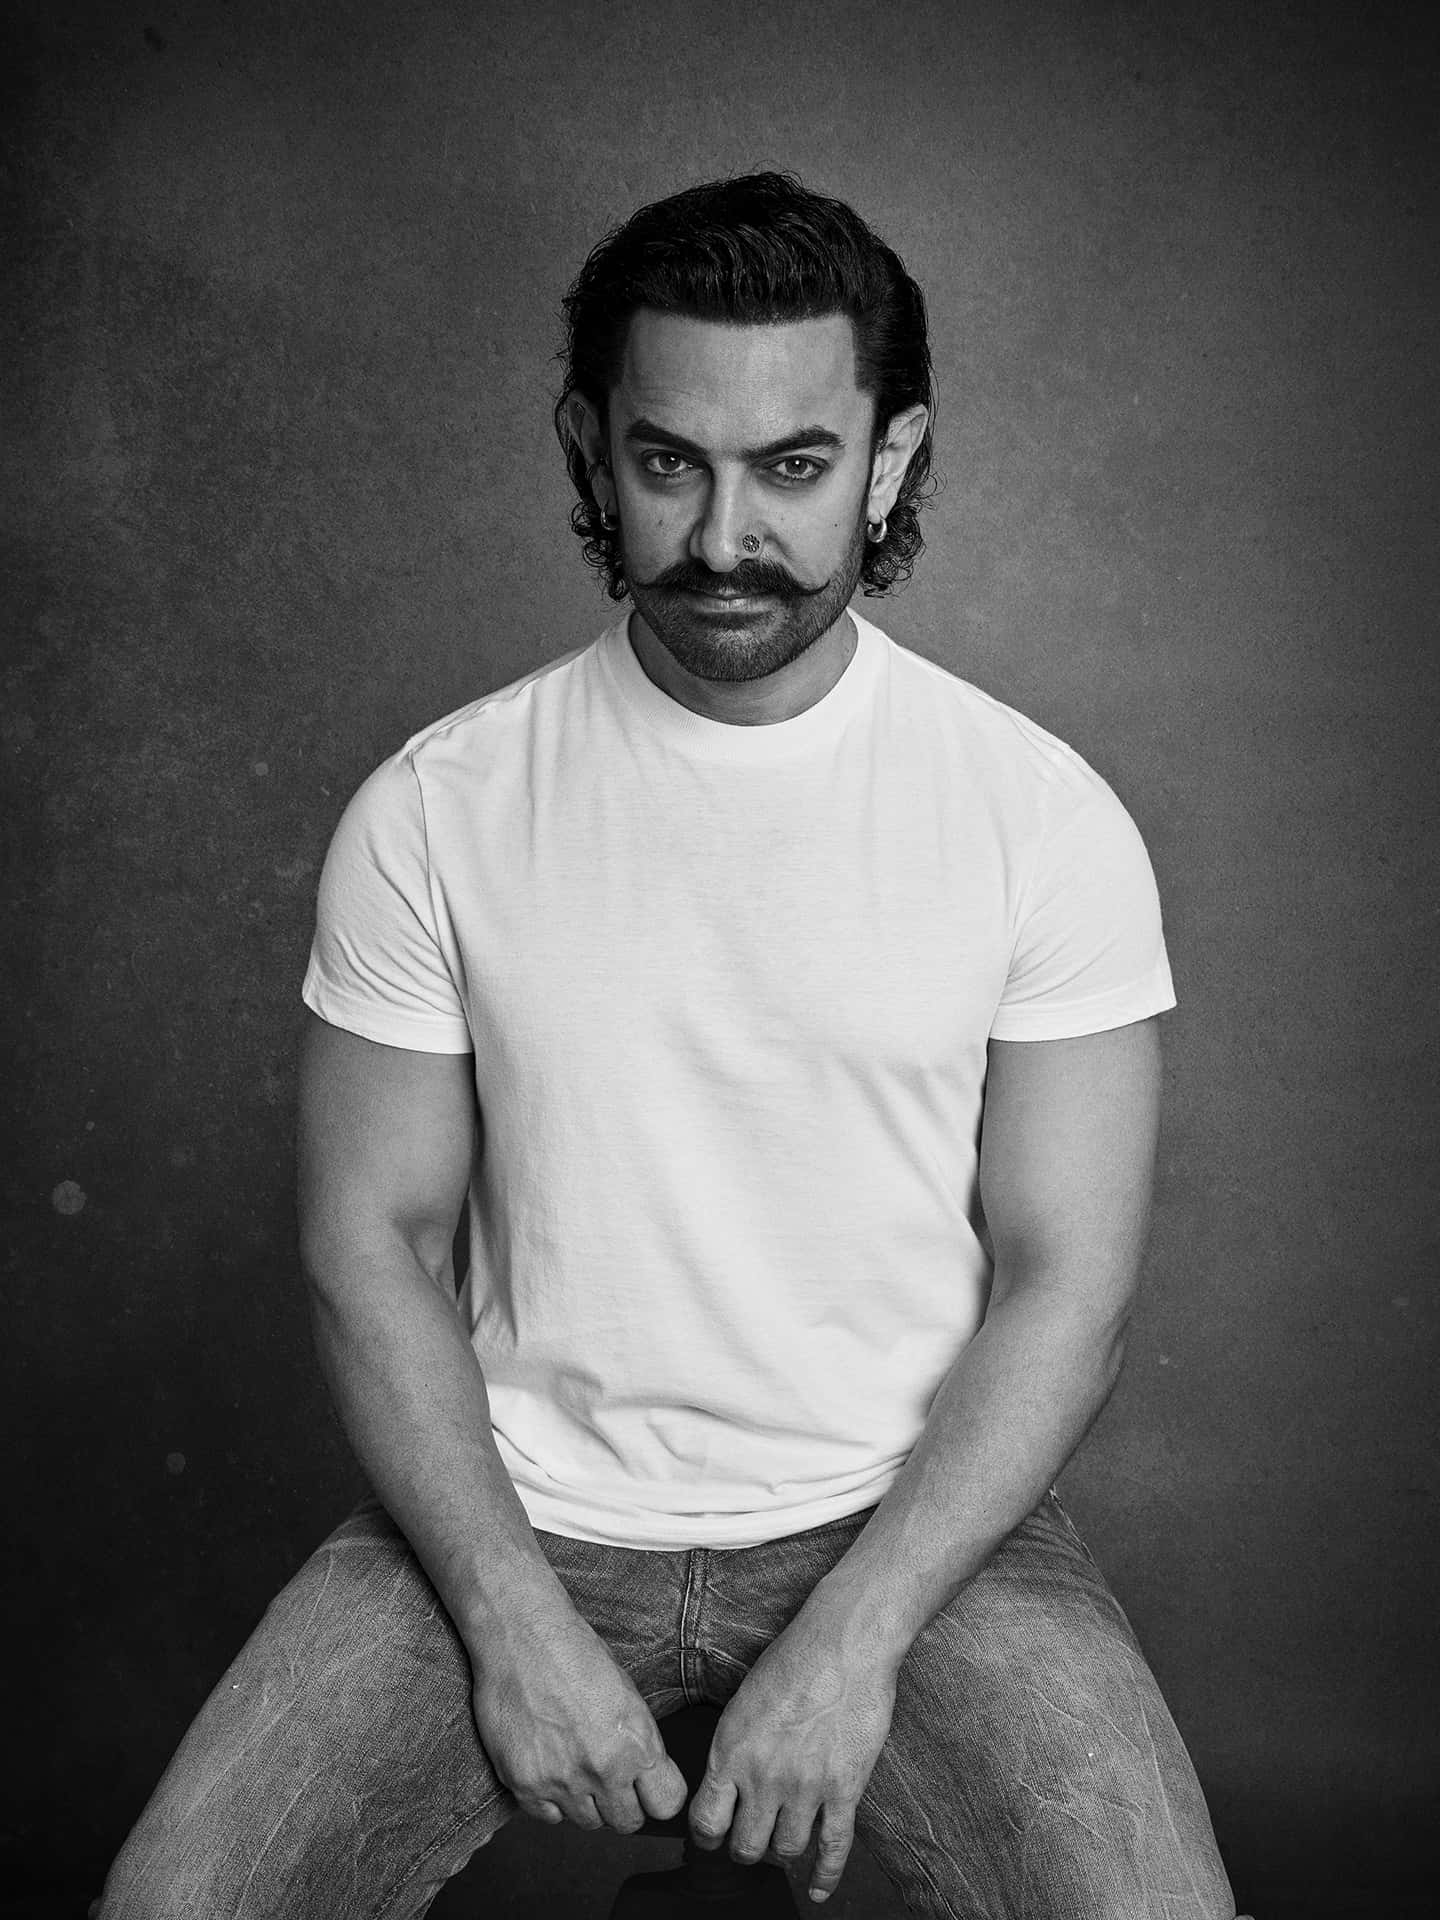 Aamirkhan, Indisk Skådespelare Och Producent